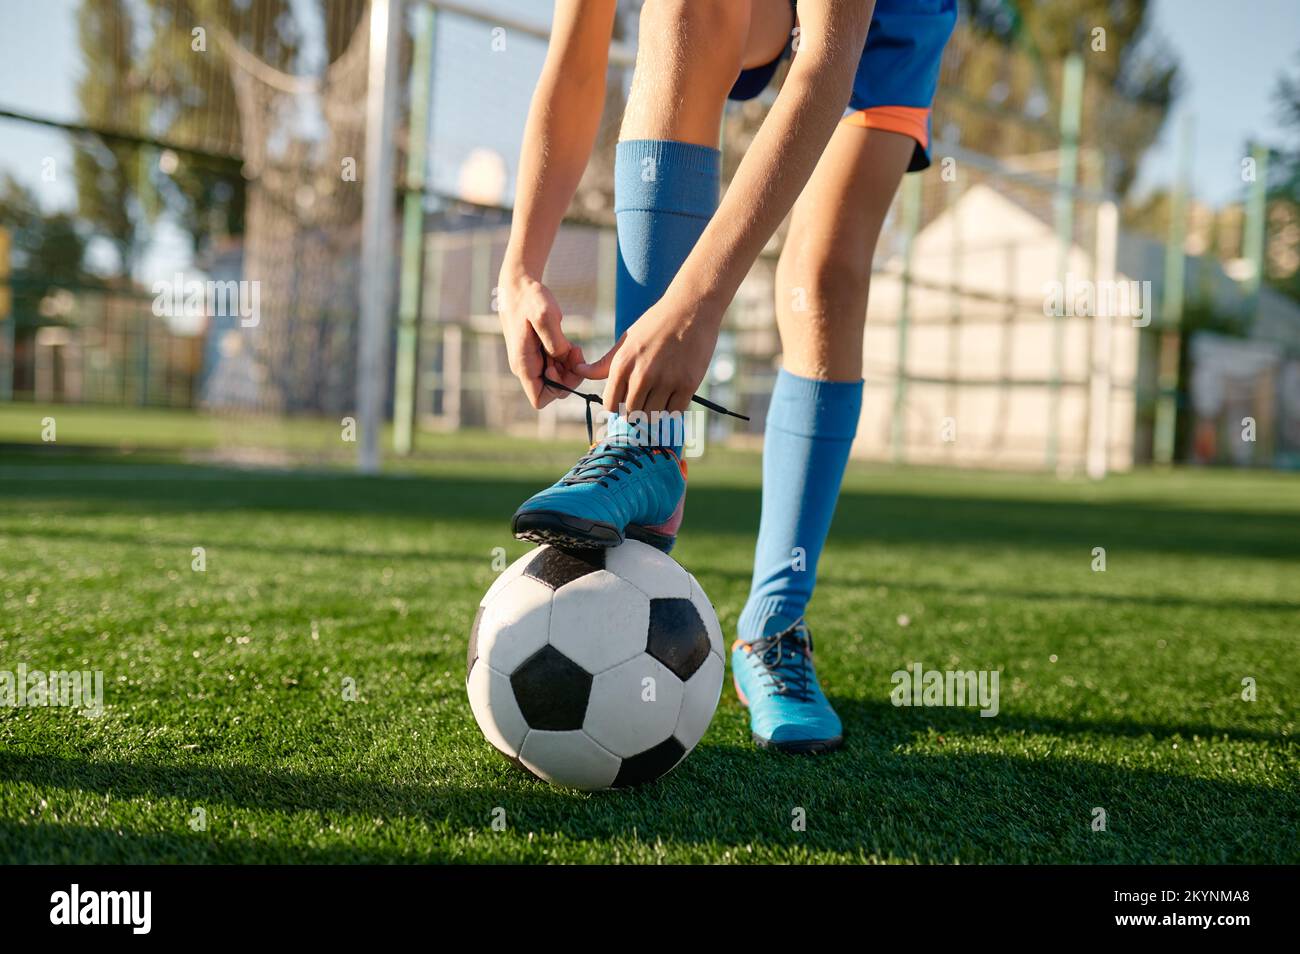 Ein kleiner Footballspieler, der Schnürsenkel bindet und ein Bein auf den Ball legt Stockfoto